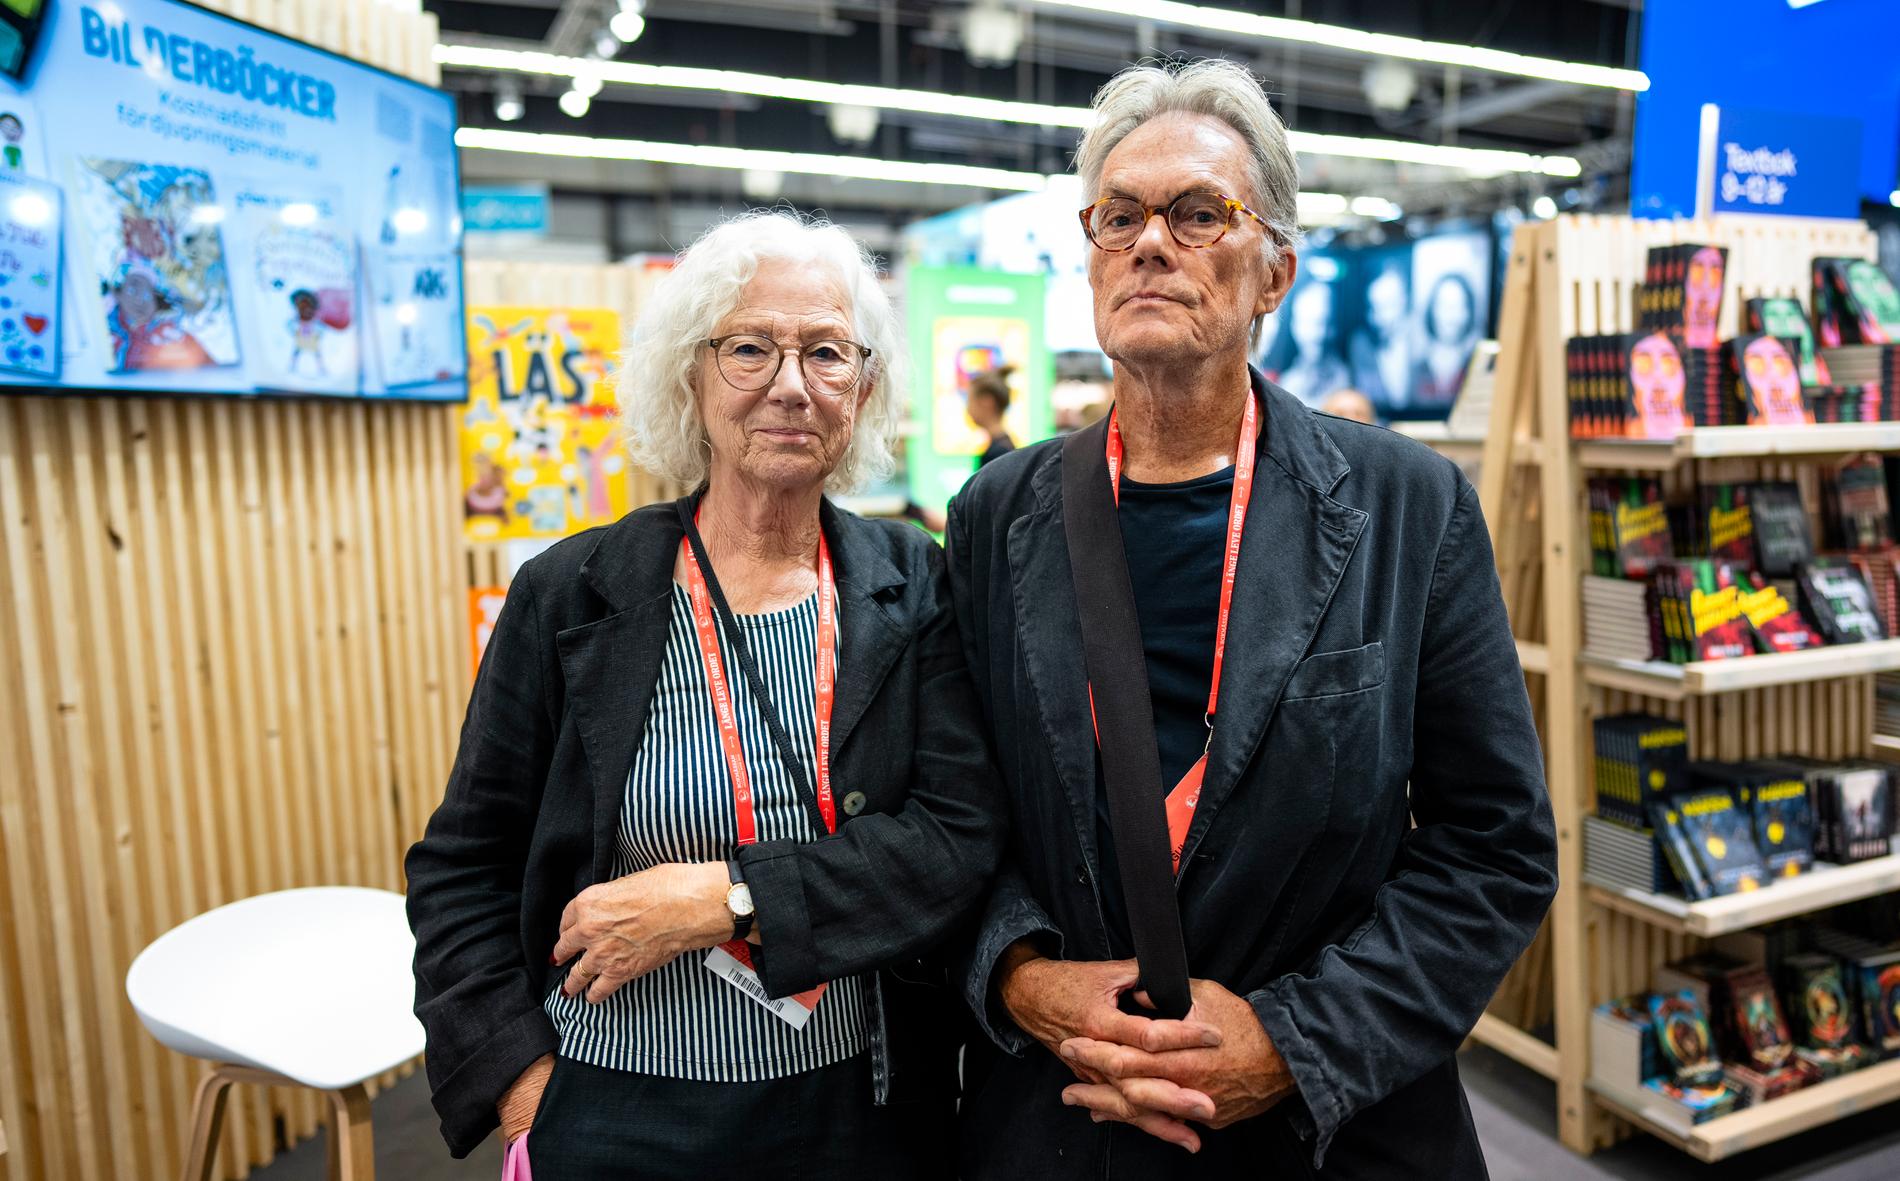 Jujja Wieslander och Sven Nordqvist, duon bakom bland annat dundersuccén ”Mamma Mu”.